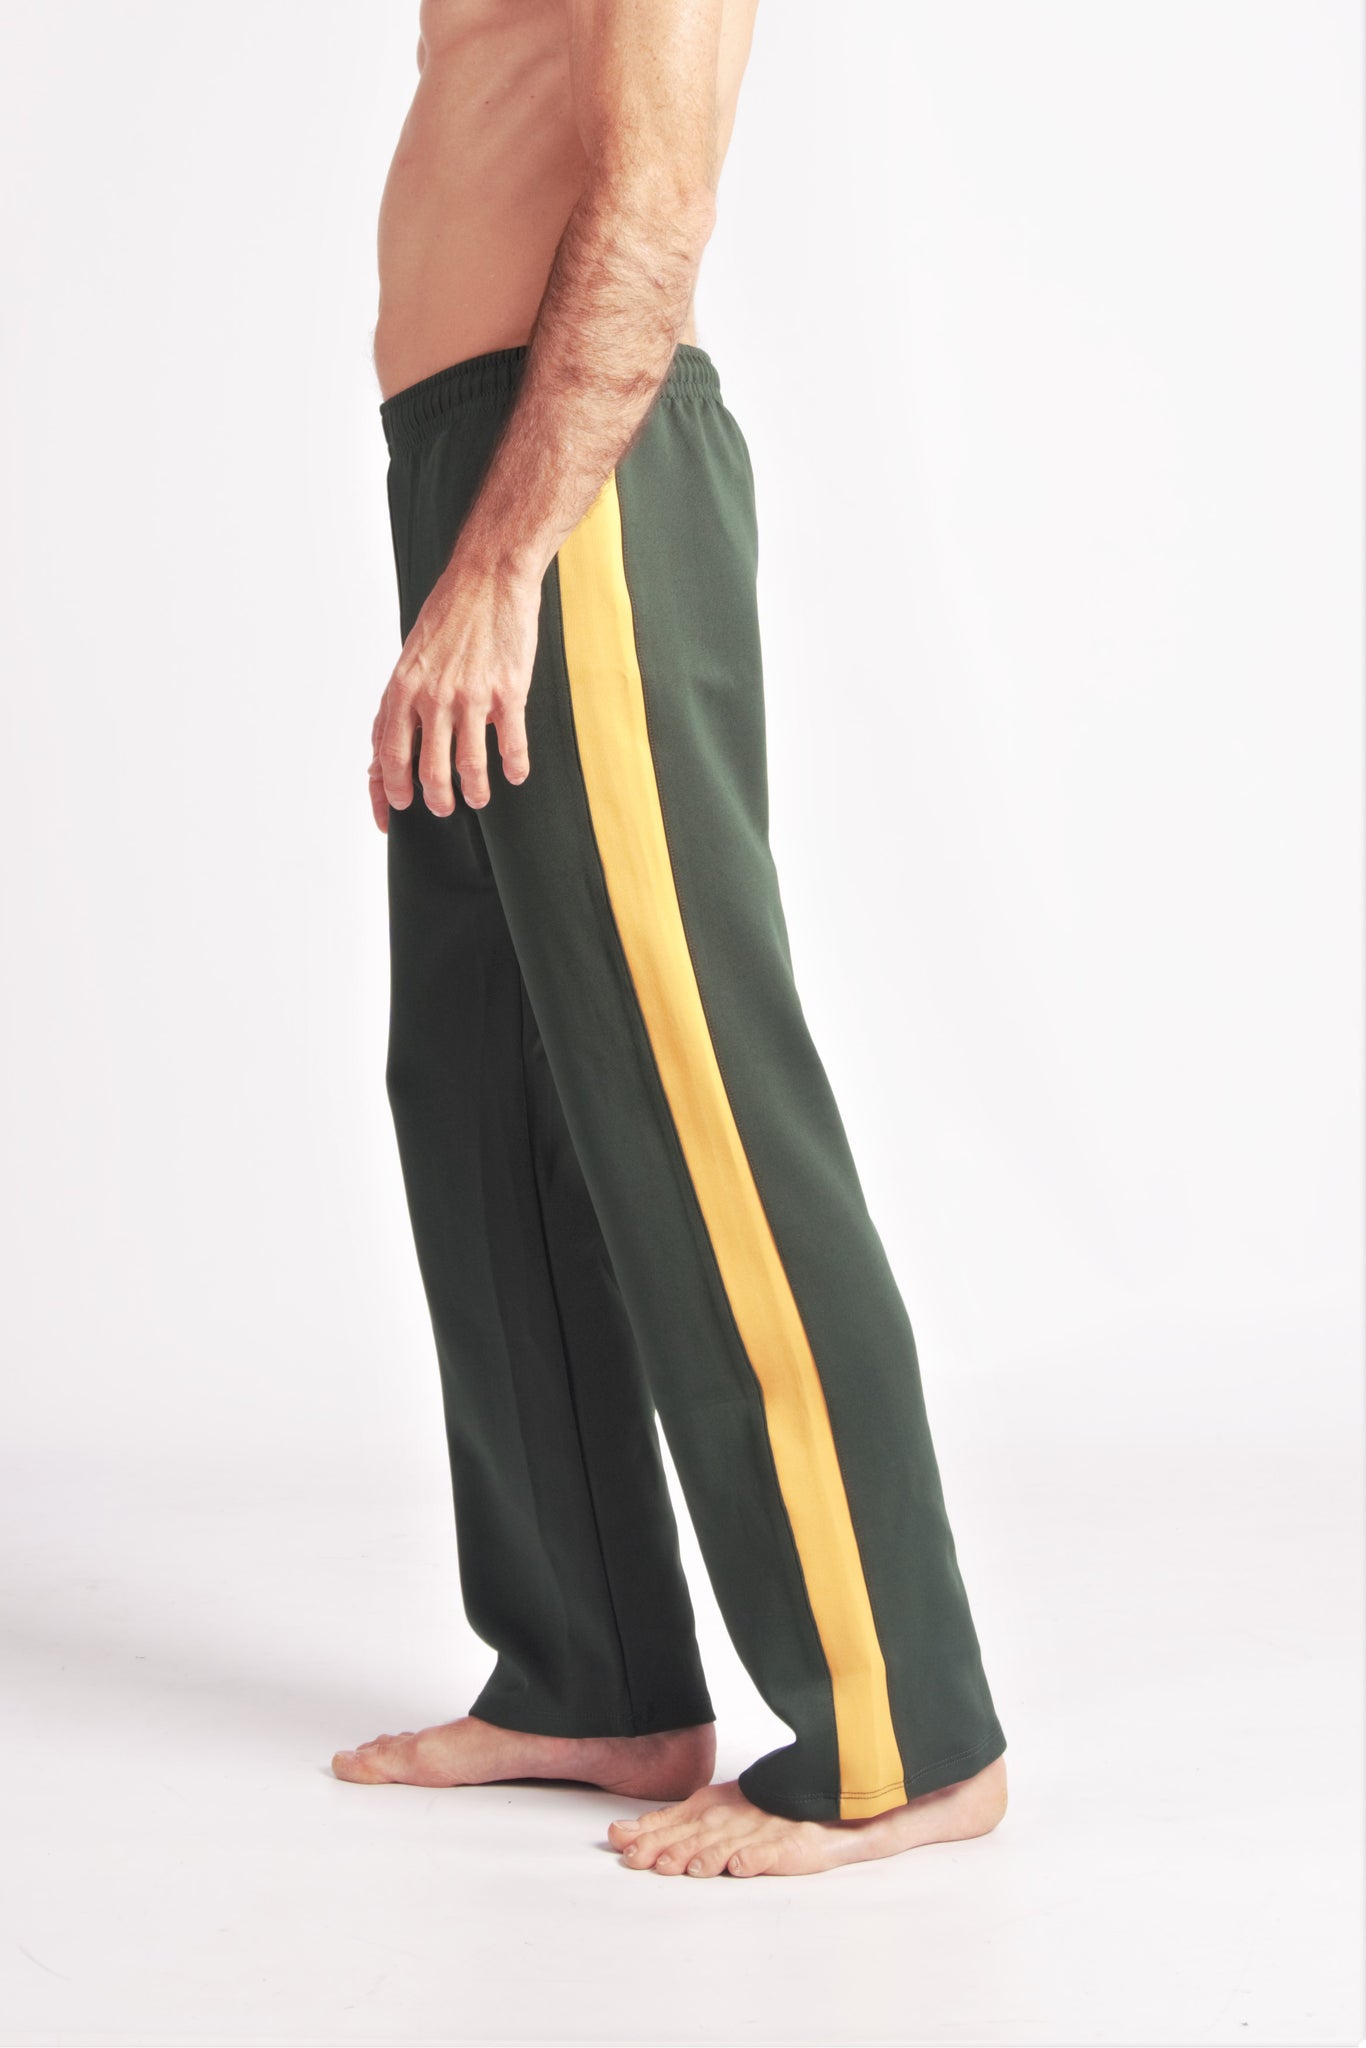 Flying Dance Pants es un pantalón de danza técnico unisex para entrenamiento de baile, danza contemporánea, acrobacia, yoga, artes marciales, pilates y cualquier disciplina vinculada al movimiento. Ideal para el trabajo de suelo, con un tejido resistente, deslizante y super absorbente. Color Verde y Mostaza.